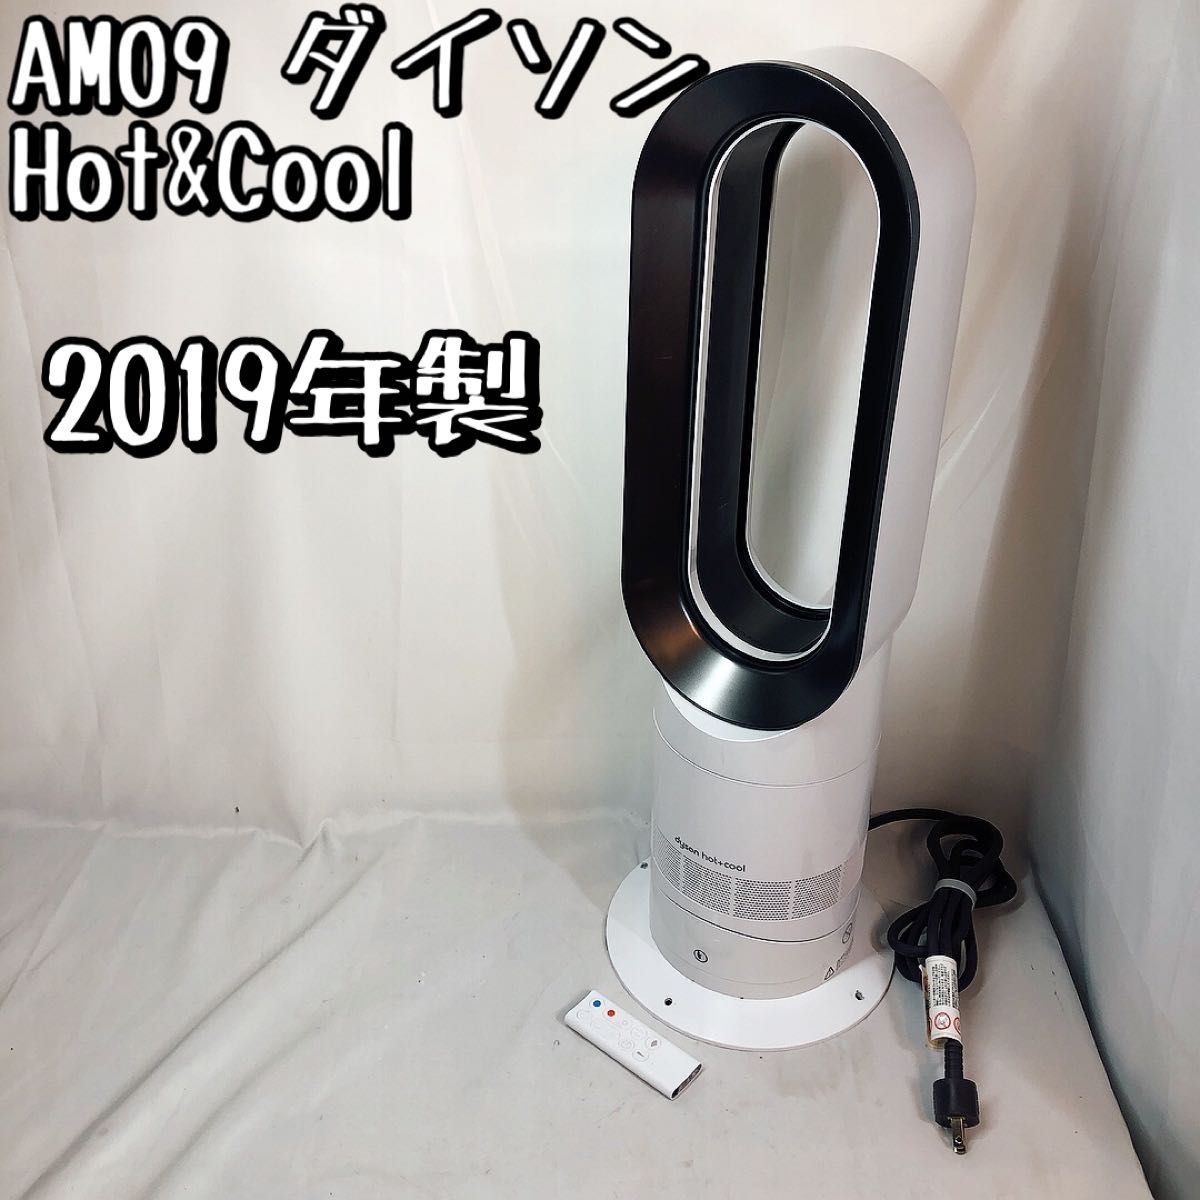 ダイソン dyson☆AM09 hot+cool☆リモコン付☆2019年☆白 - 空調